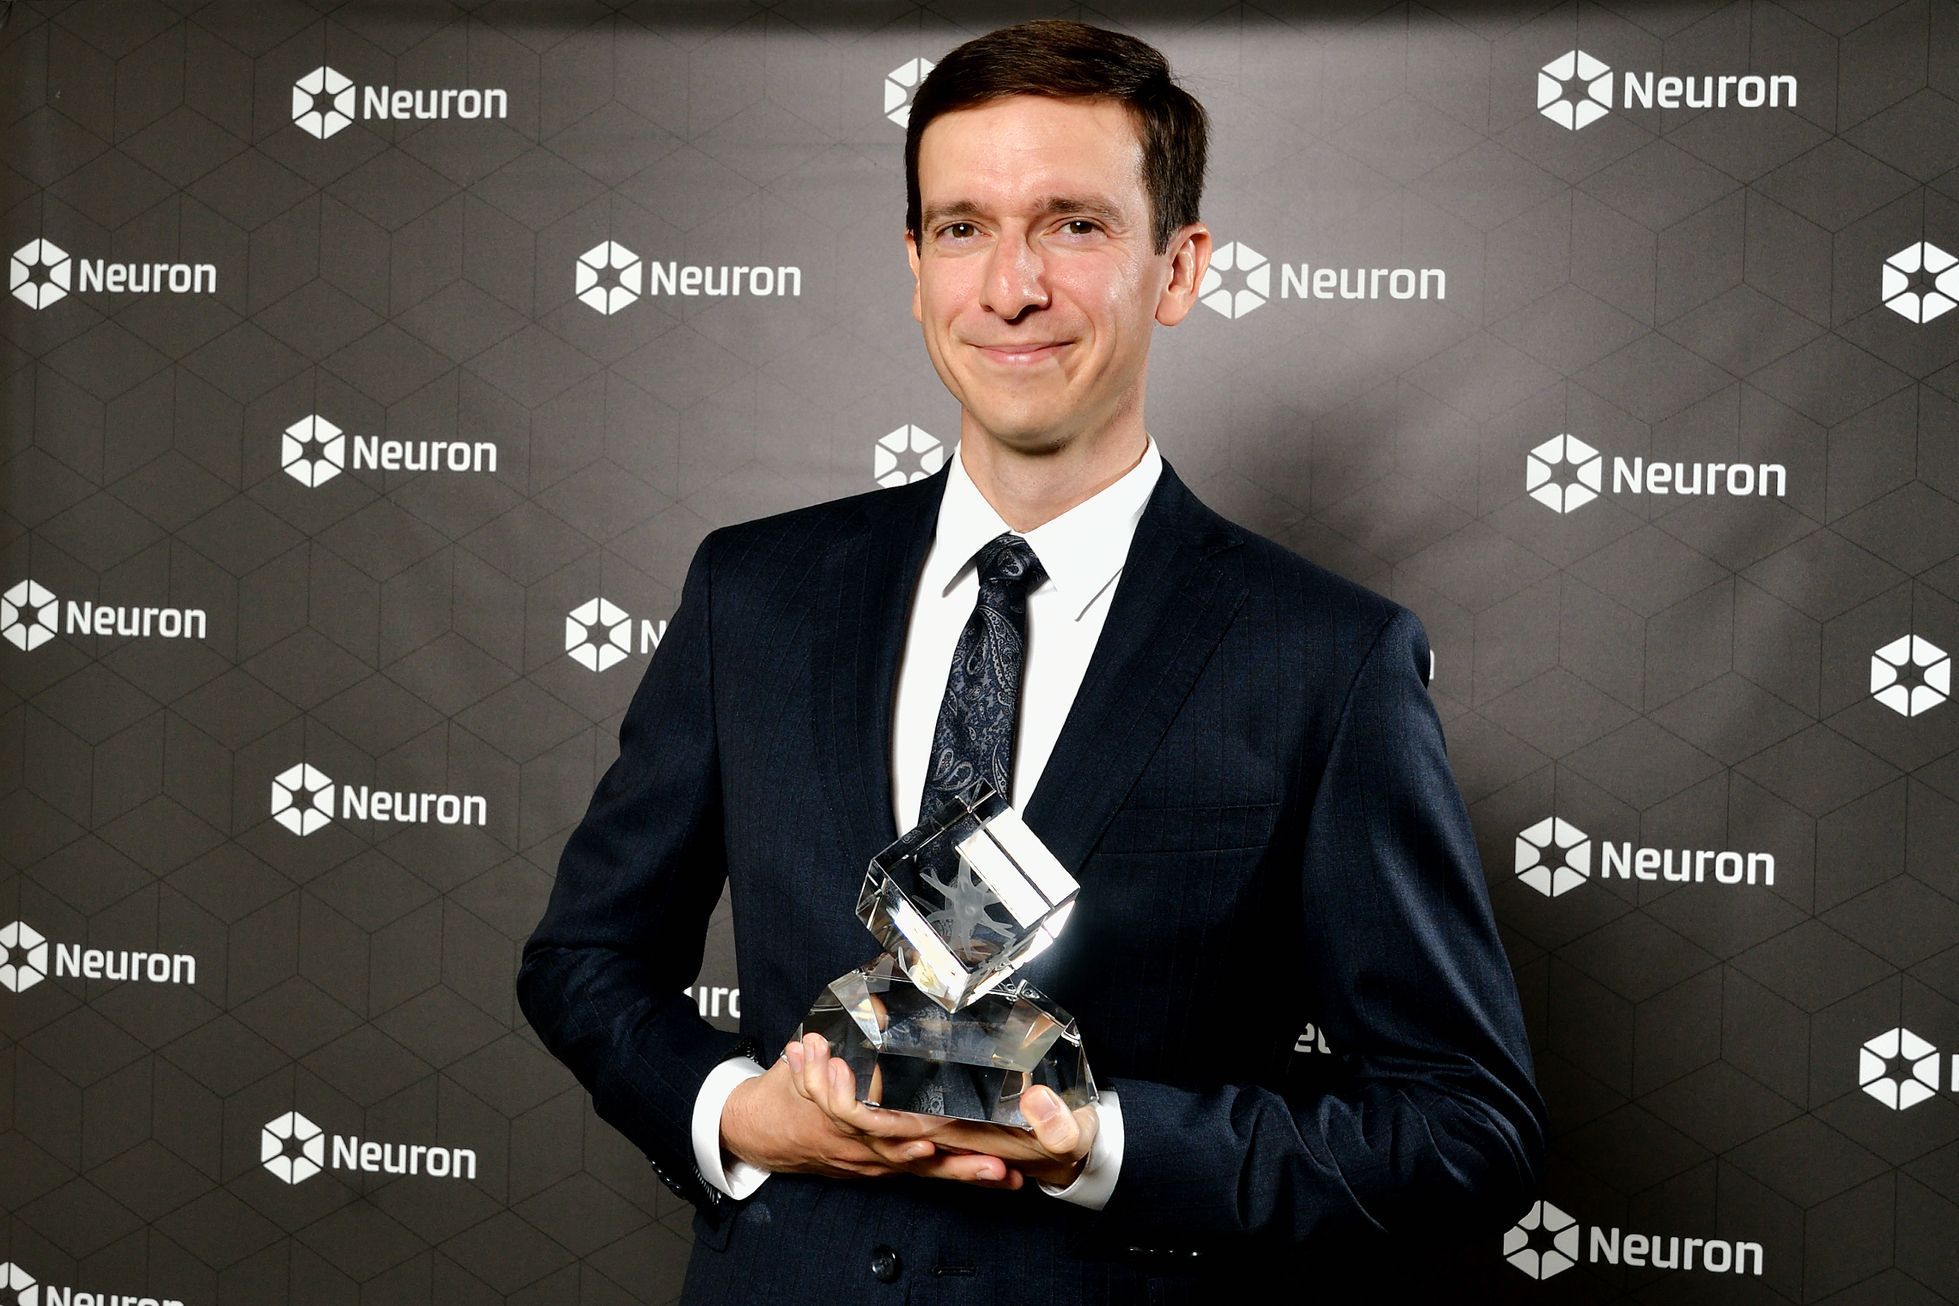 Ceny Neuron 2019 - biolog Petr Kohout